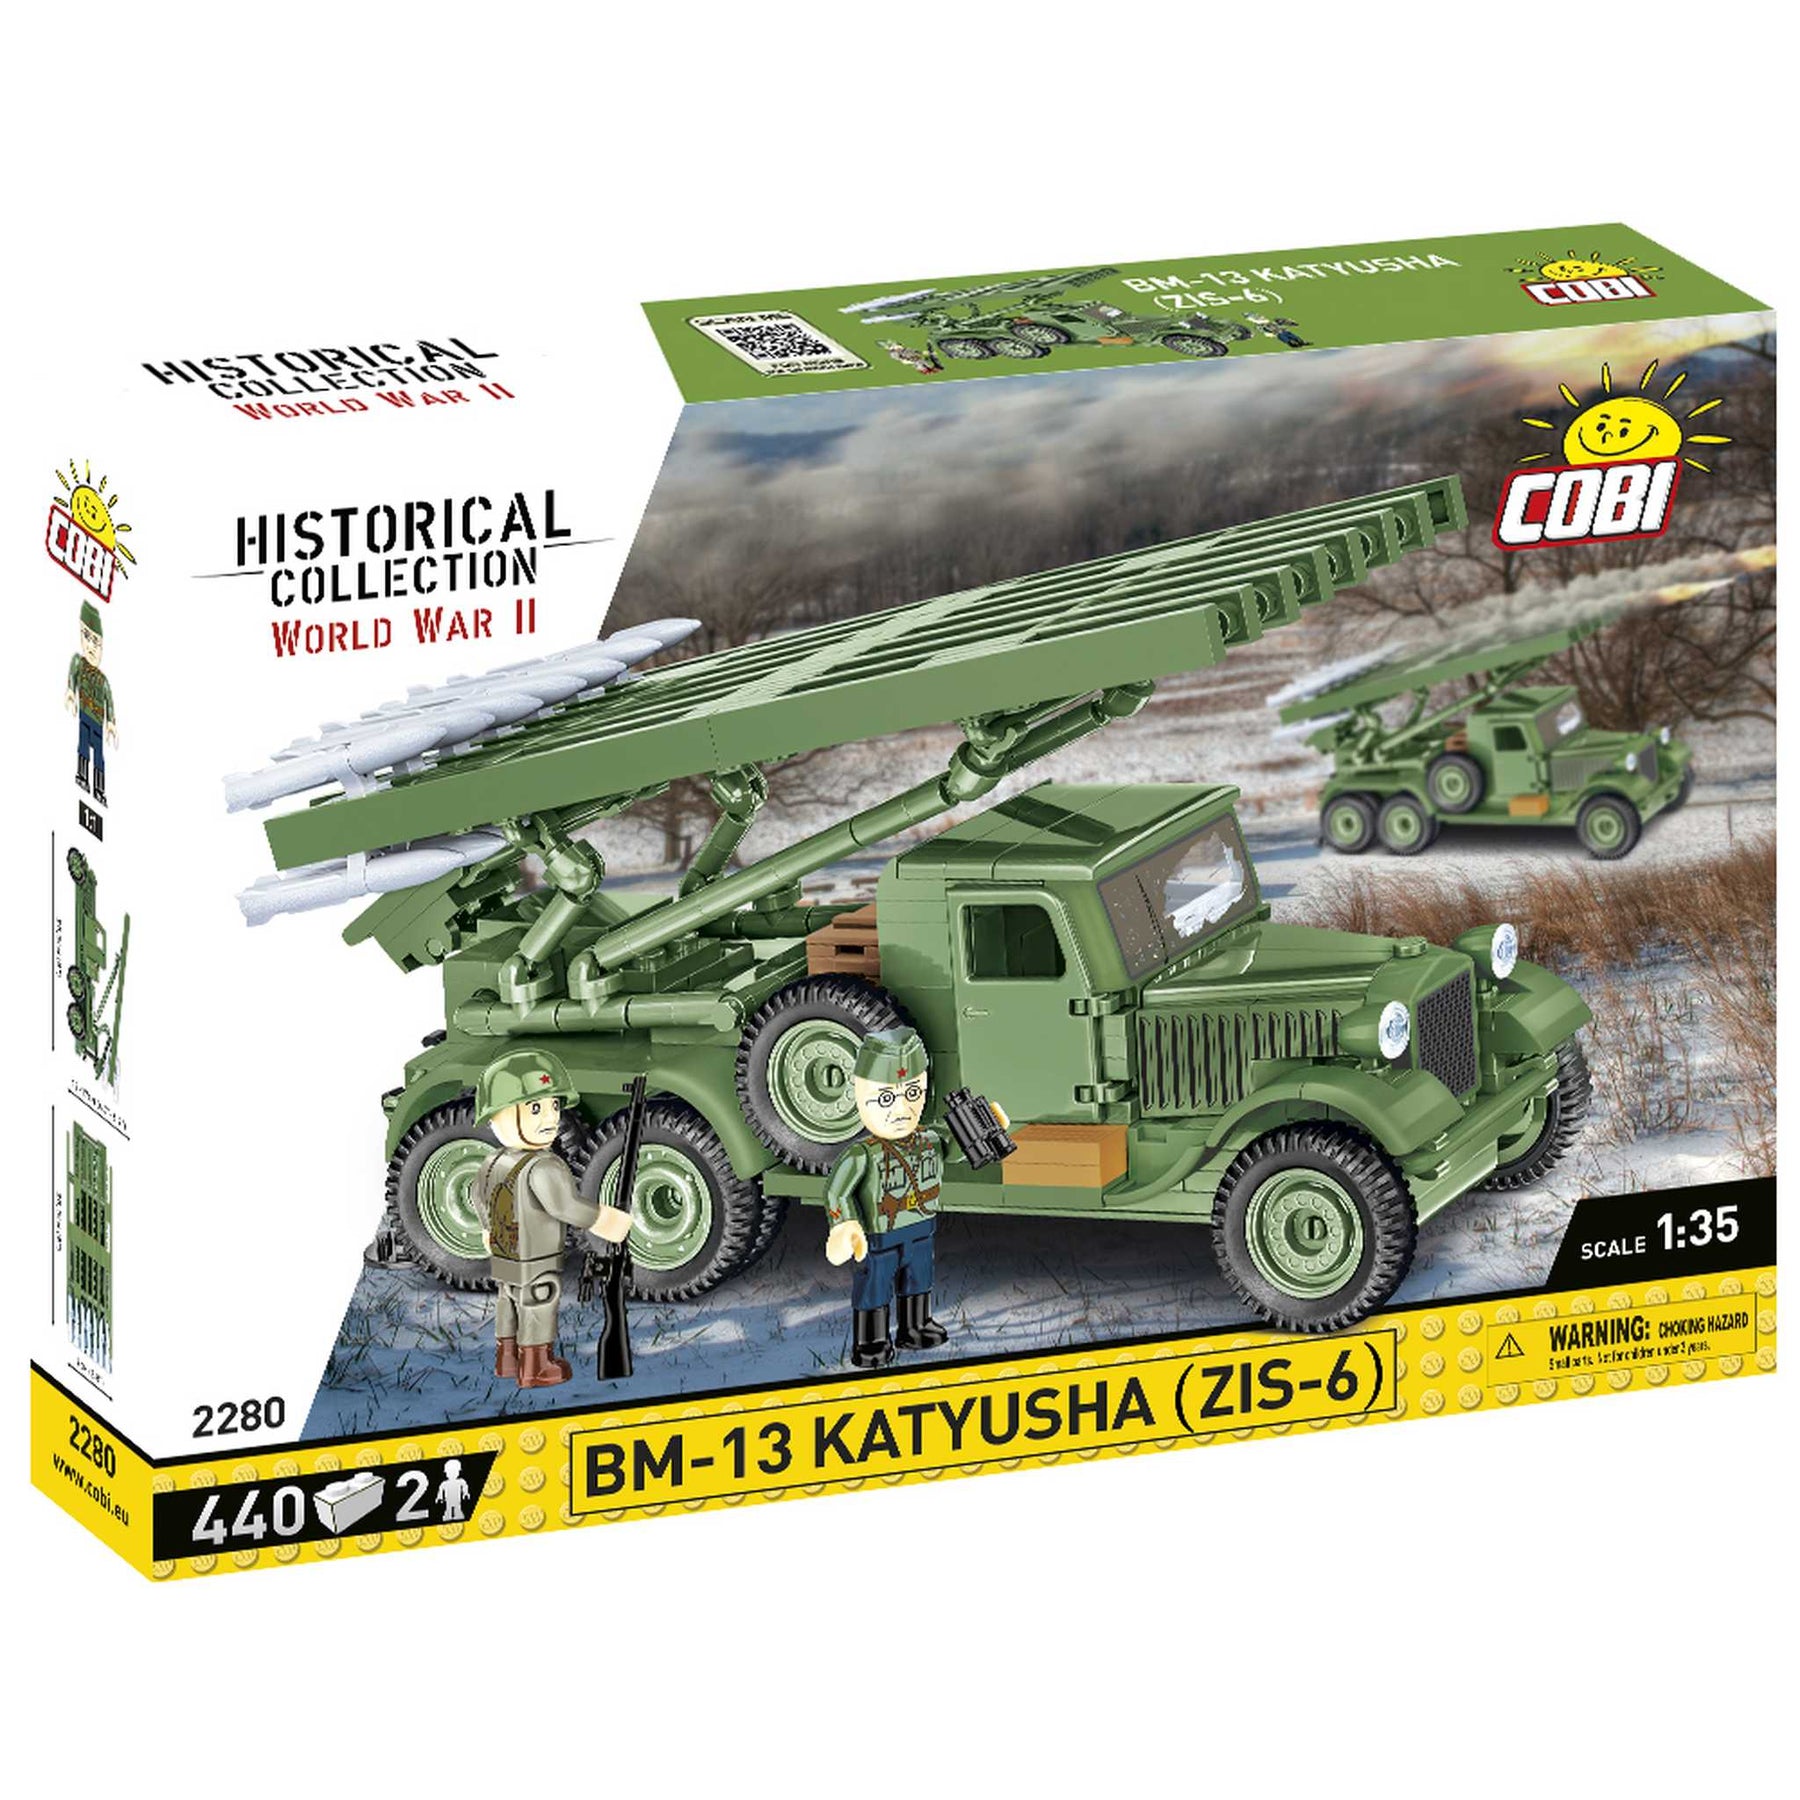 2280 - BM-13 Katyusha Raketenwerfer (Cobi)